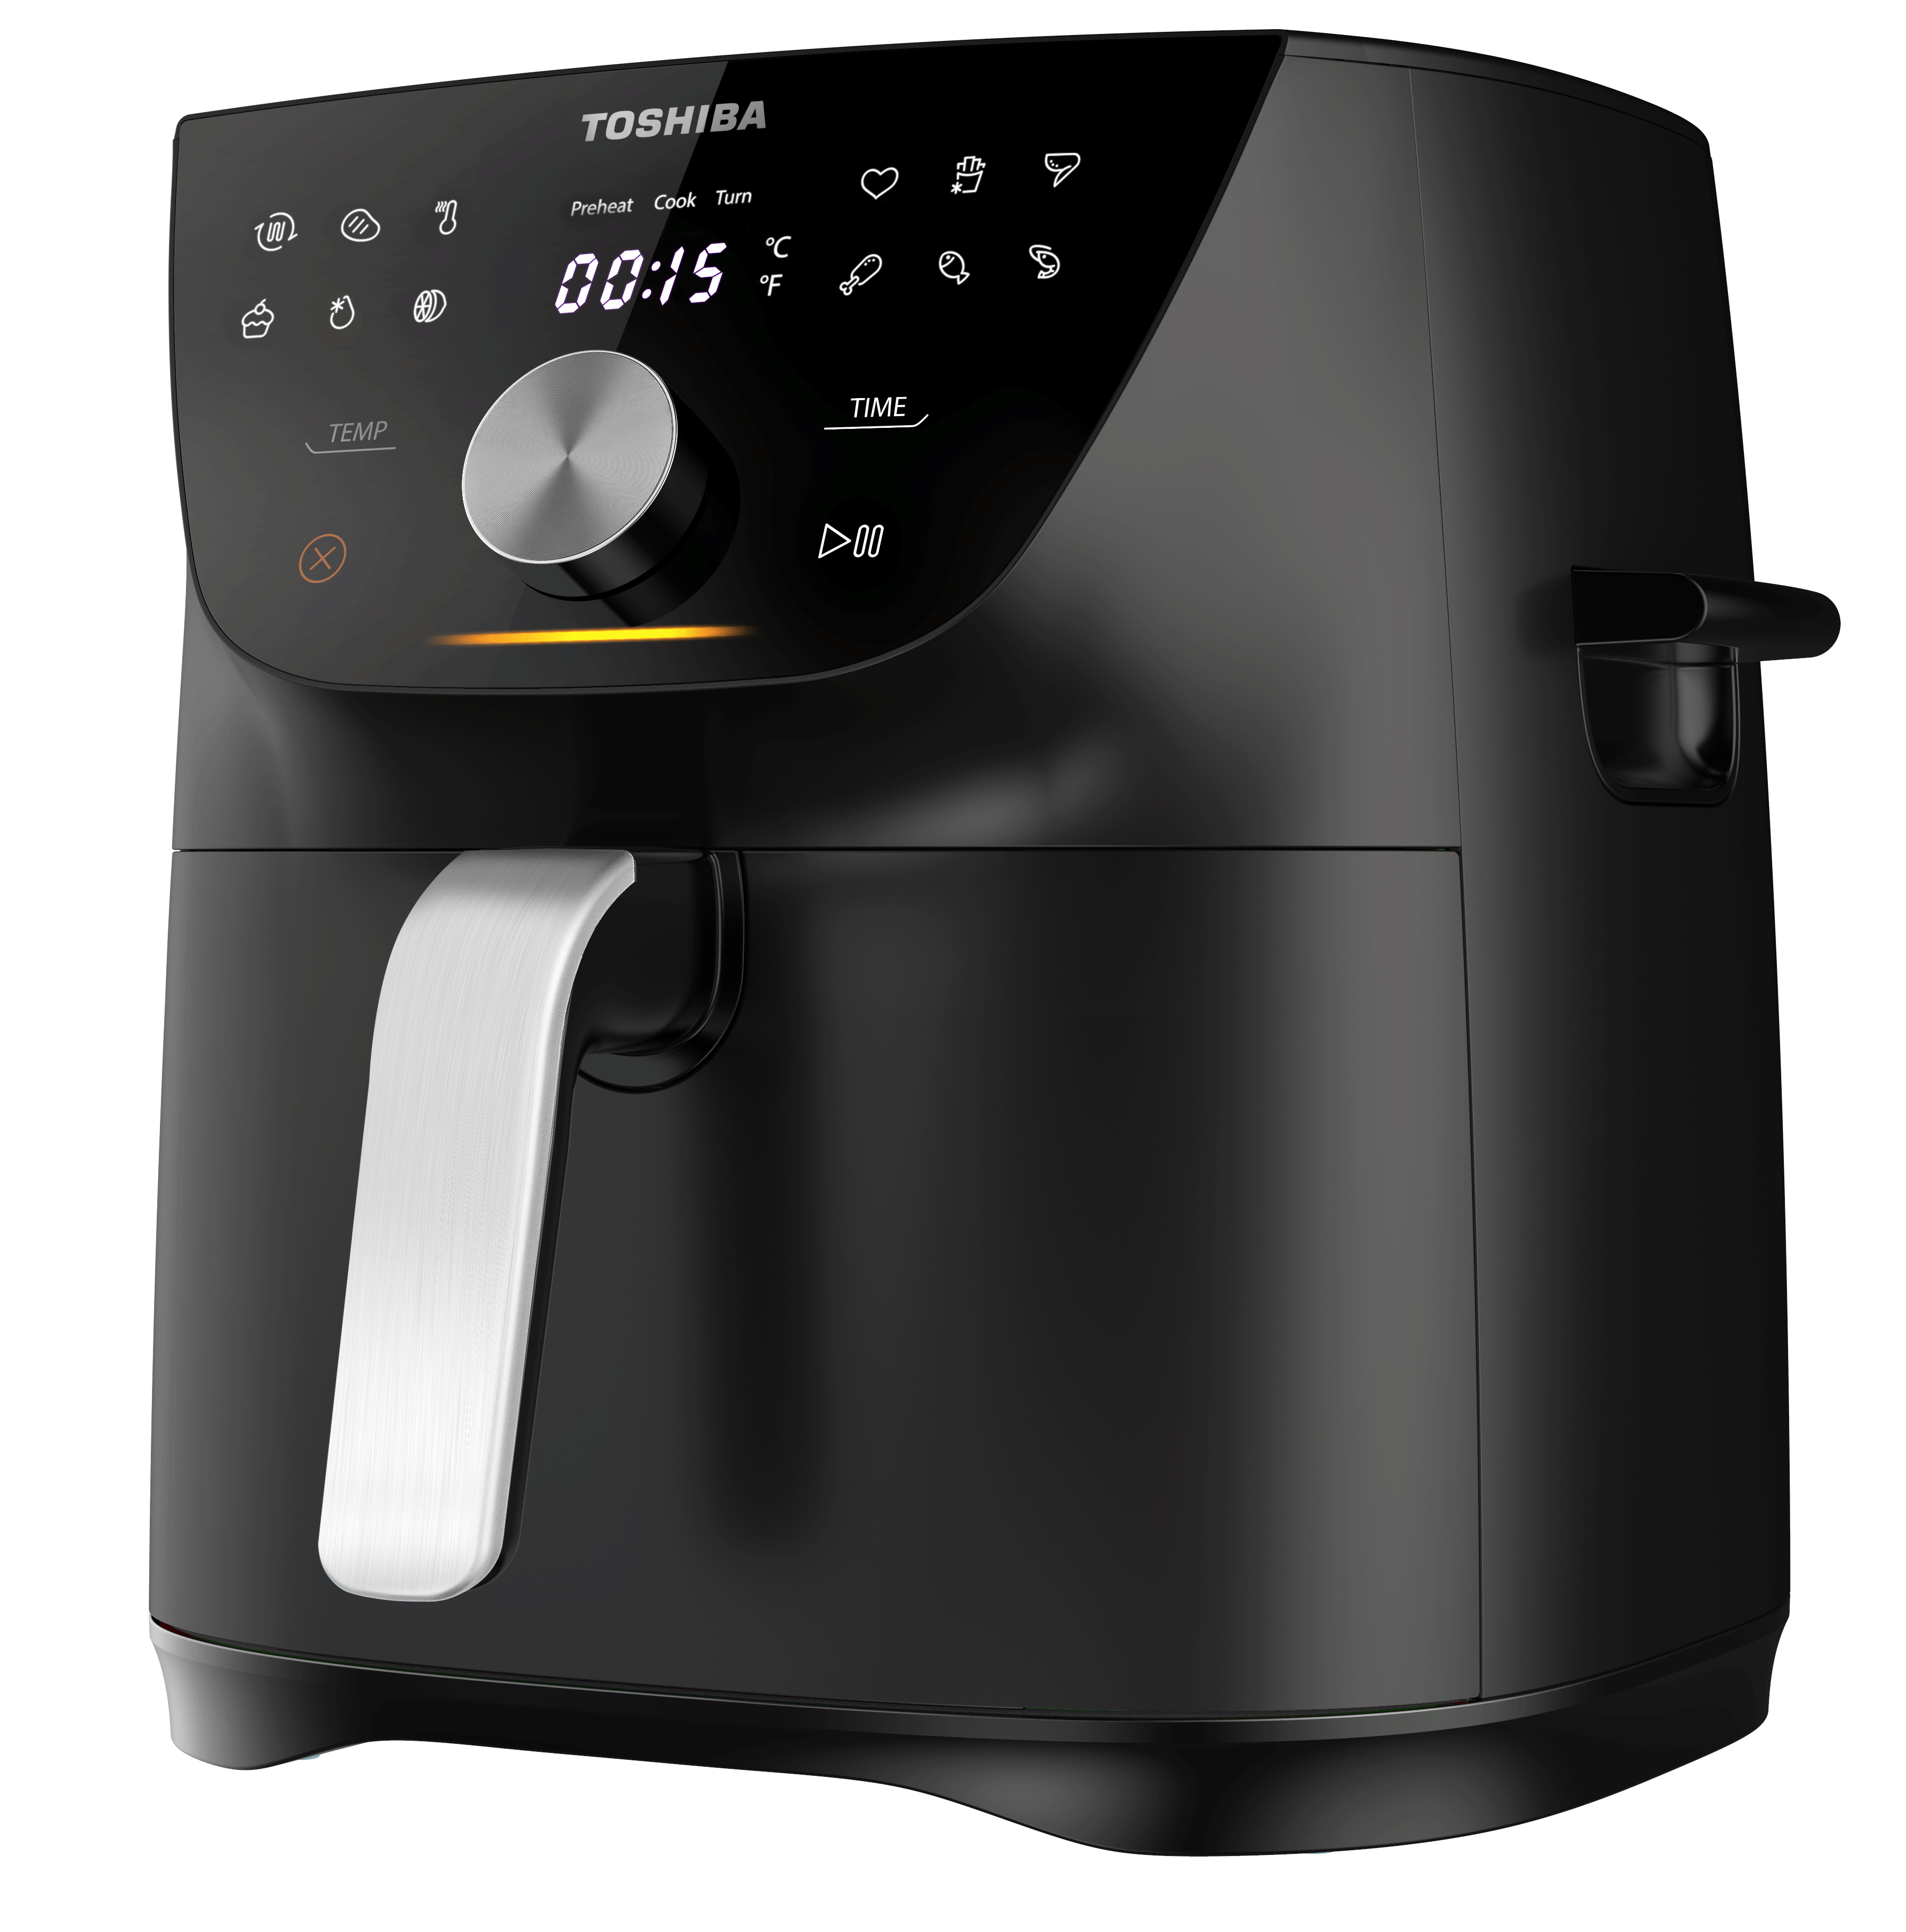 Digital Air Fryer - 7.4 Liter Capacity